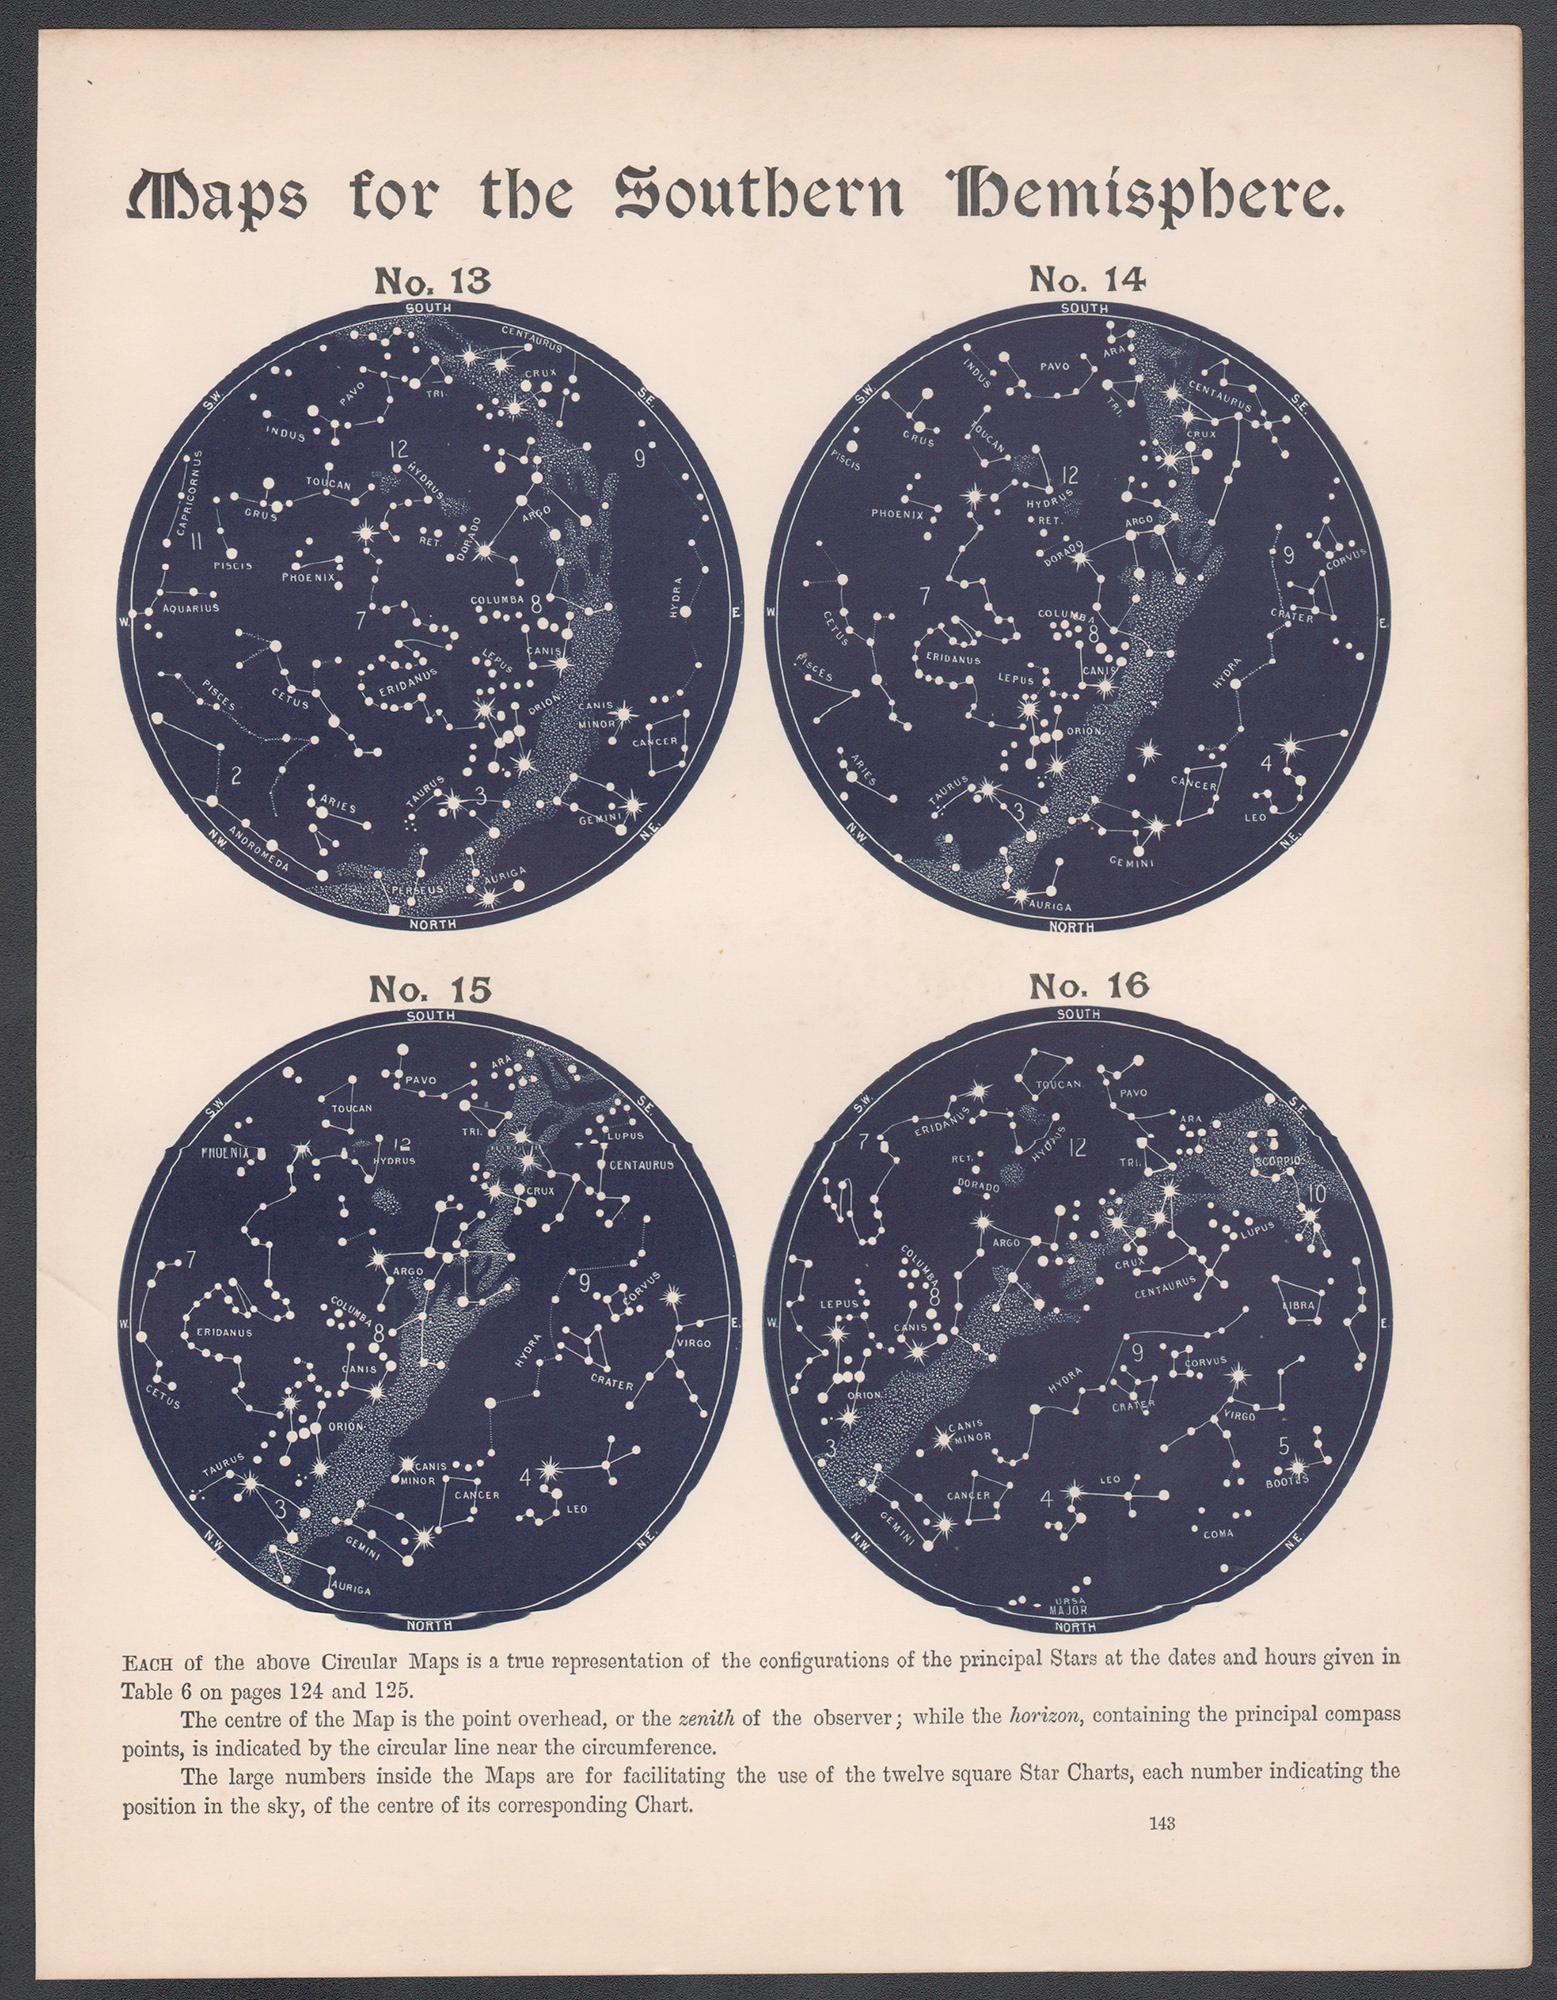 Cartes de l'hémisphère sud. Antiquité - Astronomie - Gravure sur constellation d'étoiles - Print de William Peck